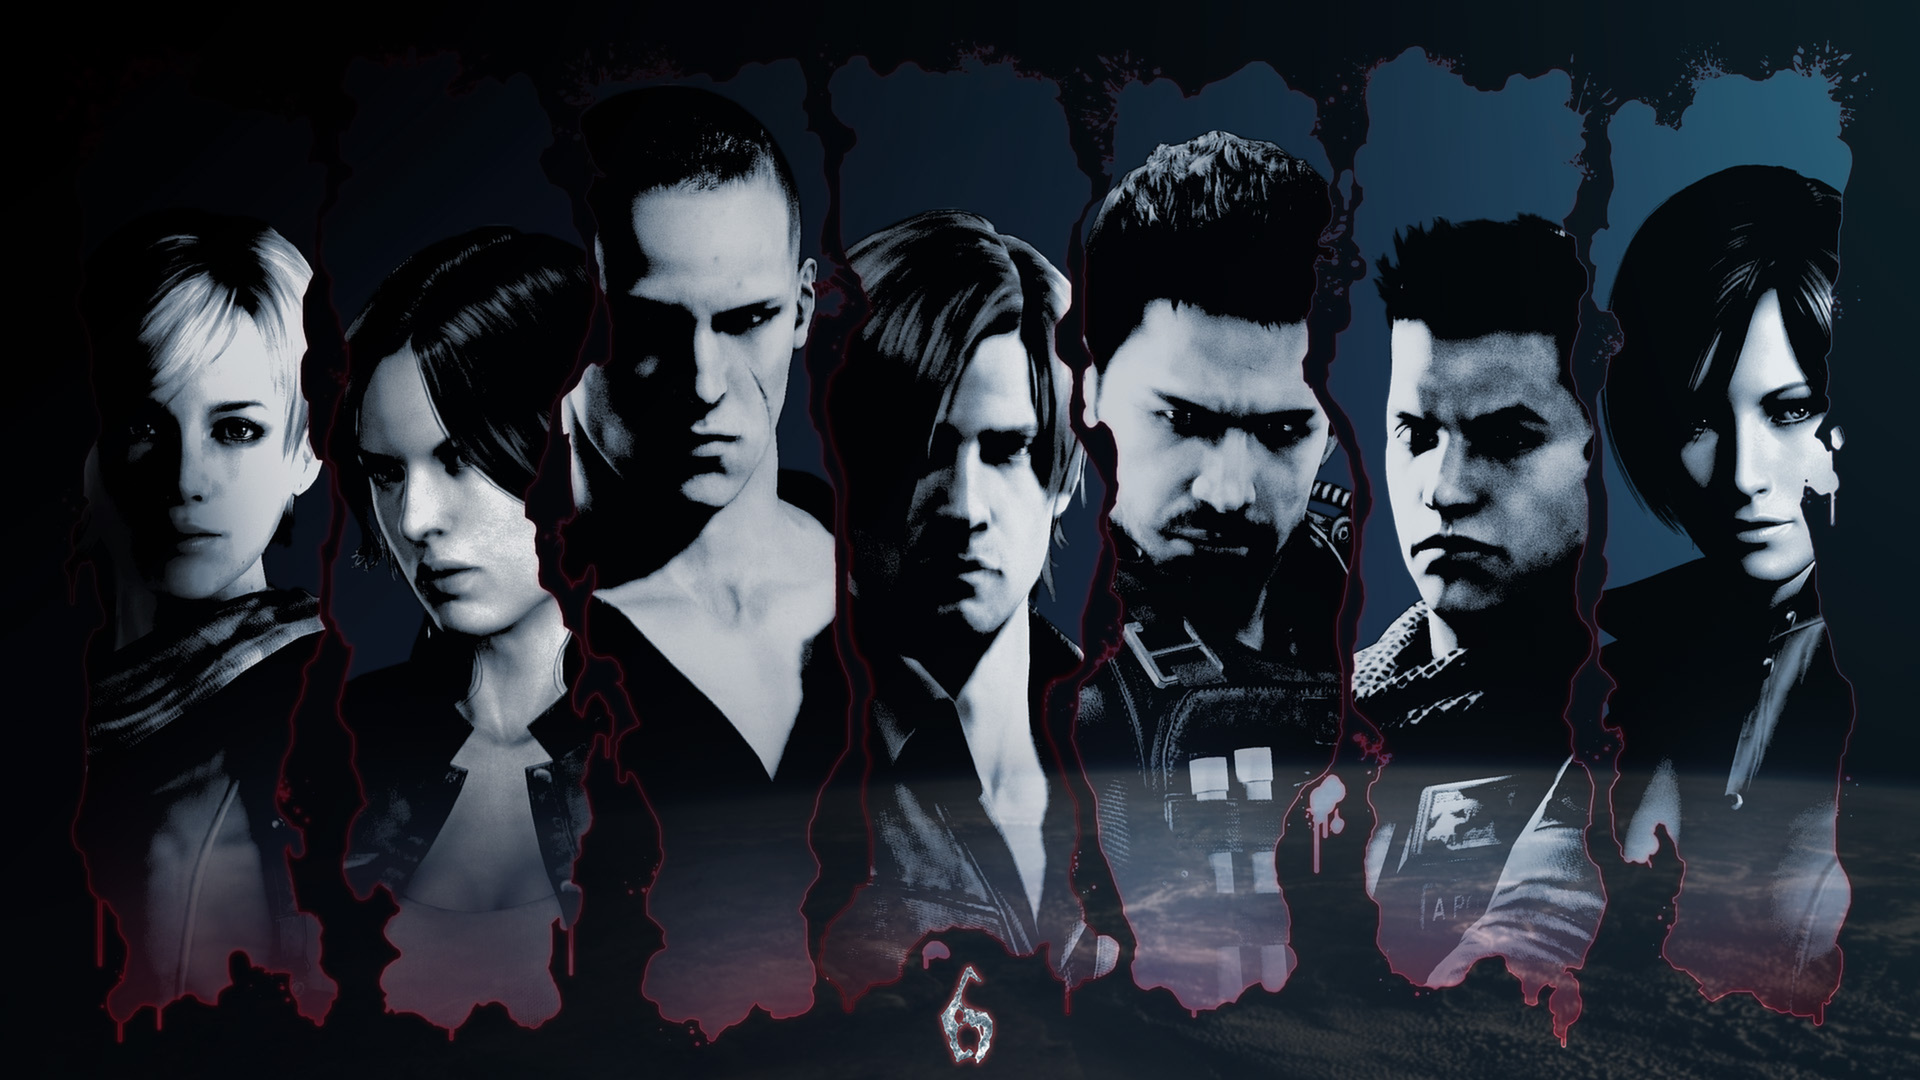 Resident Evil 6 Wallpaper For Windows - Fondos De Pantalla Hd 1080p Resident Evil , HD Wallpaper & Backgrounds